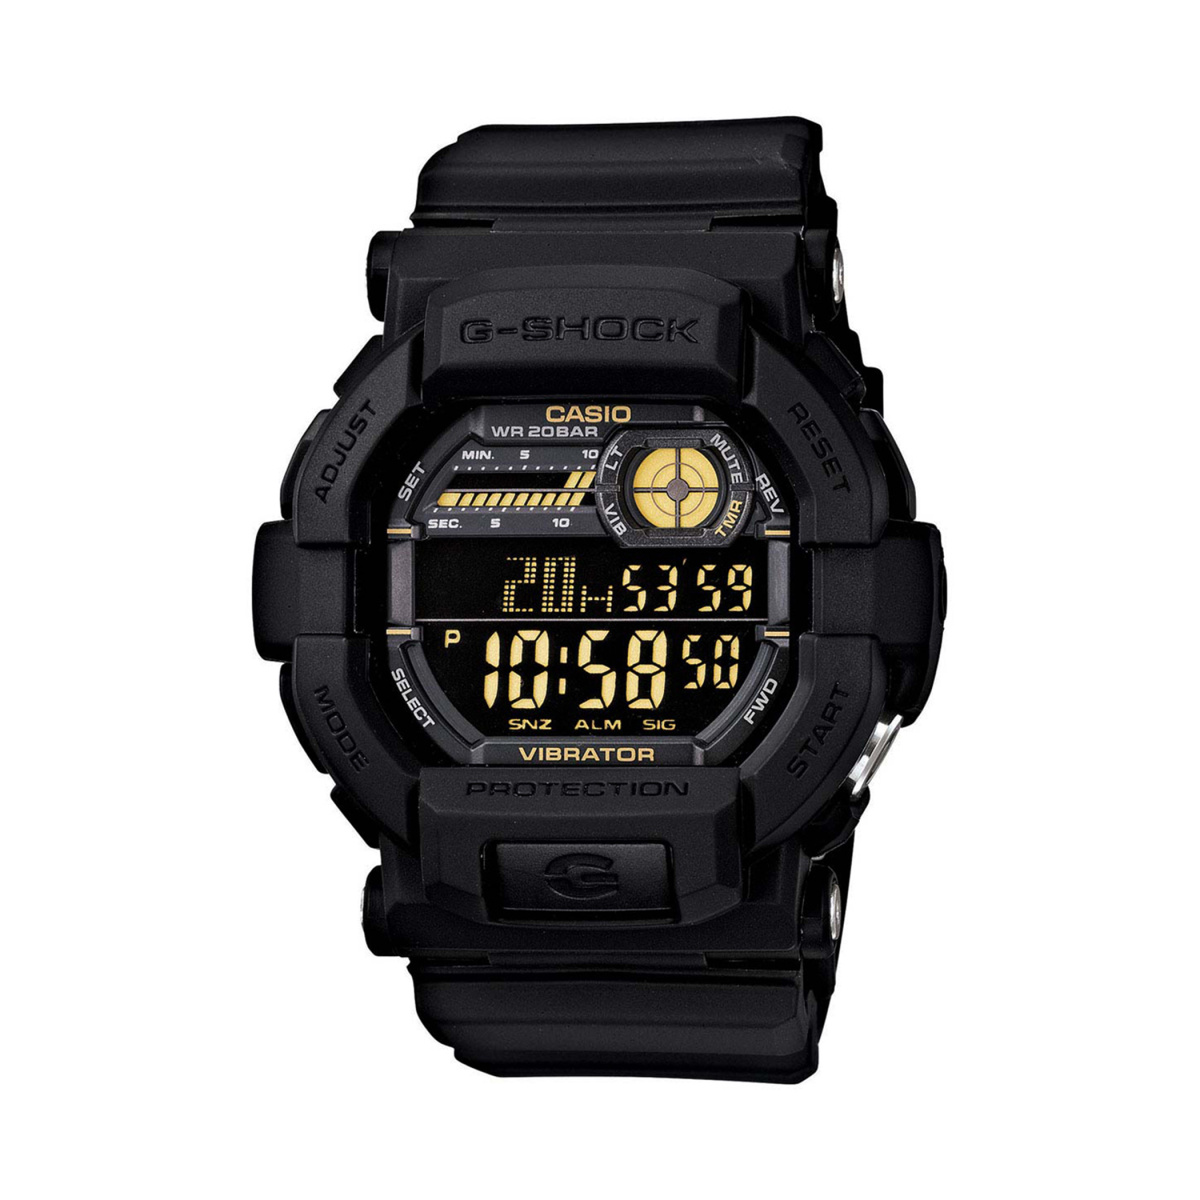 CASIO G-Shock Men Digital Watch - GD-350-1BDR (G441)